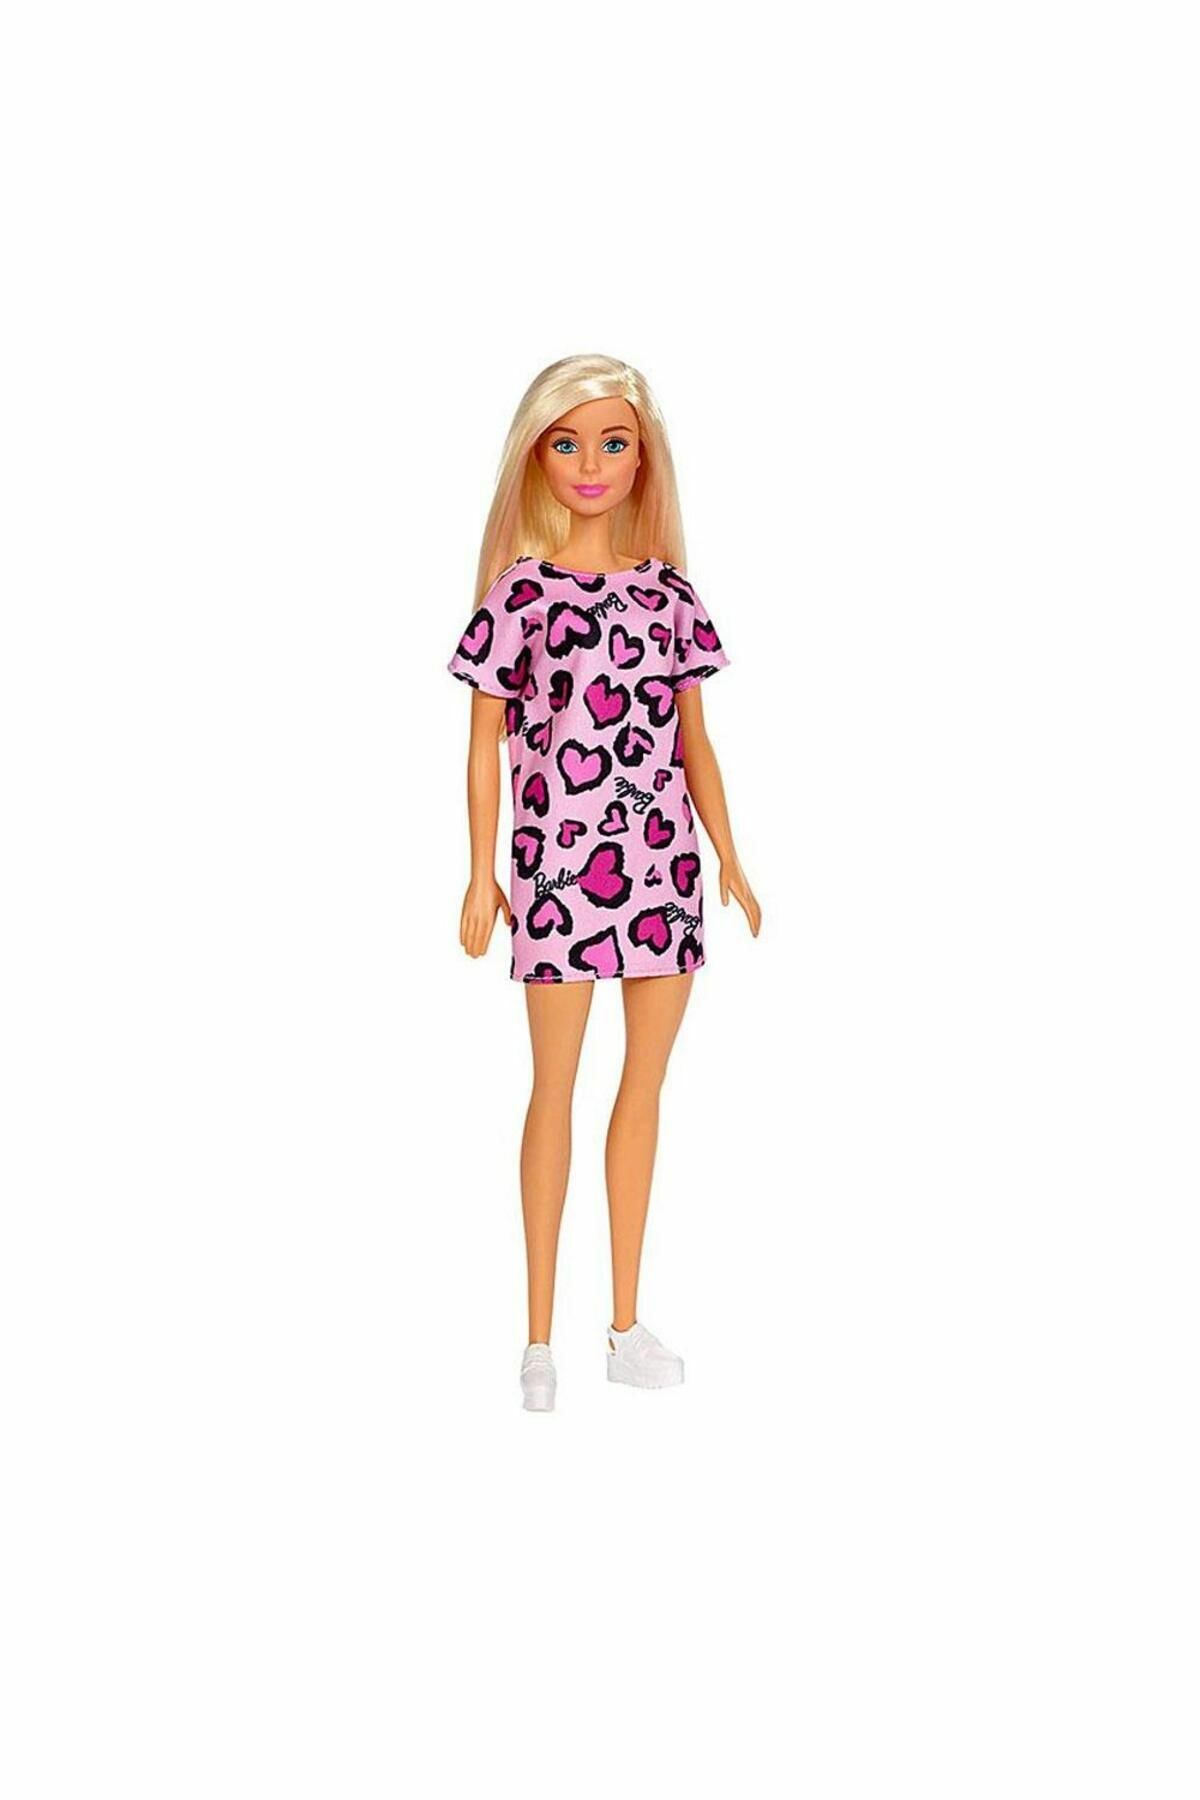 Barbie Şık Barbie Bebekler T7439-GHW45